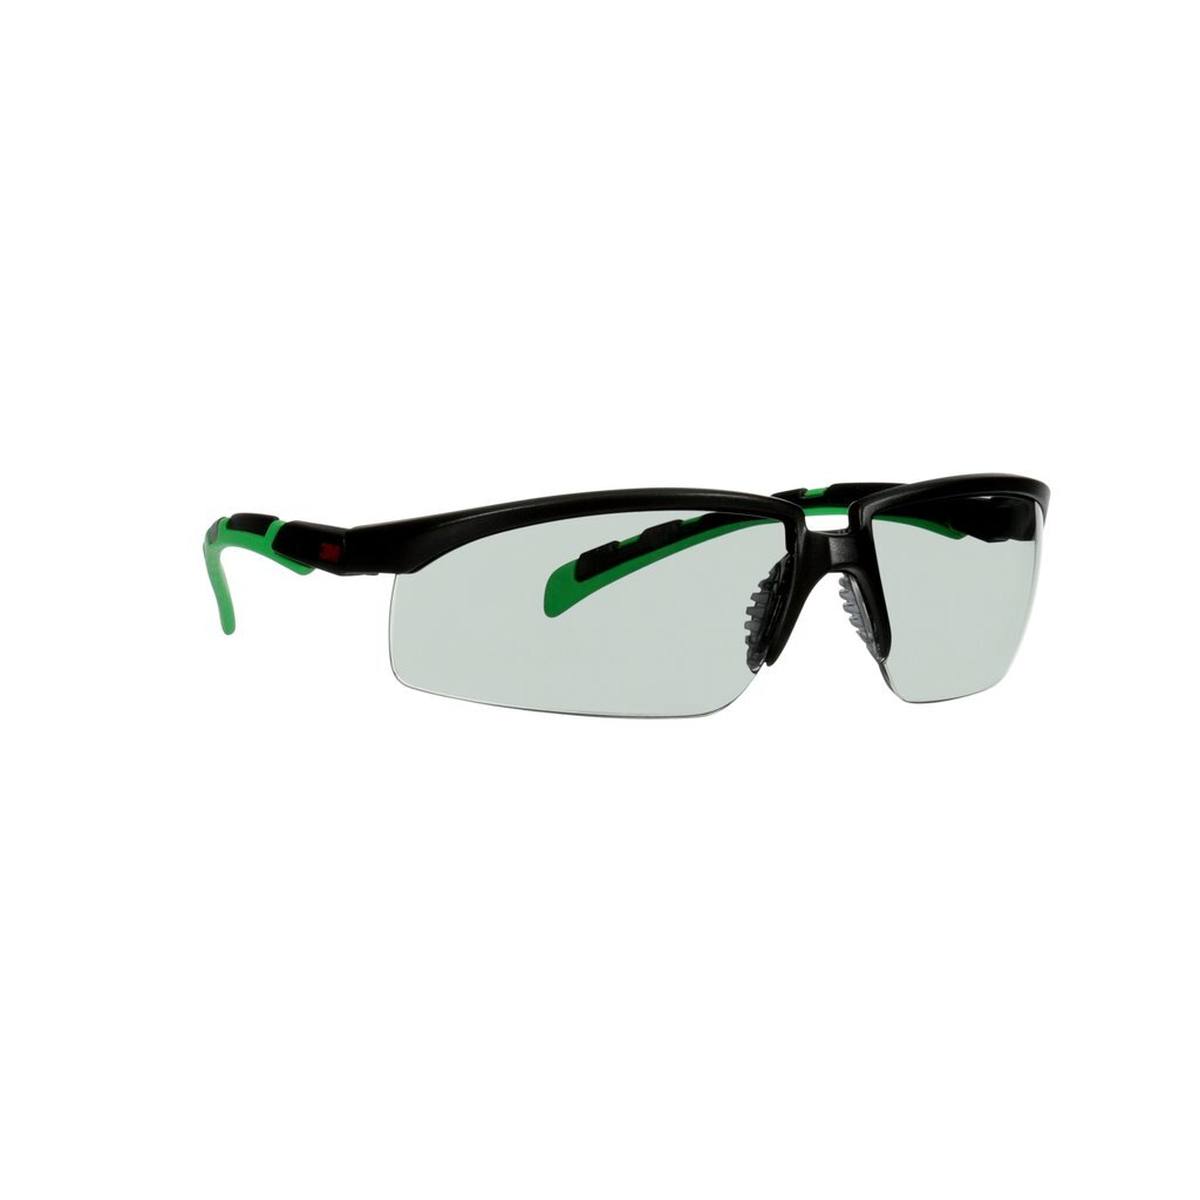 3M Solus 2000 lunettes de protection, monture noire/verte, traitement anti-rayures + (K), écran gris IR 1,7, S2017ASP-BLK